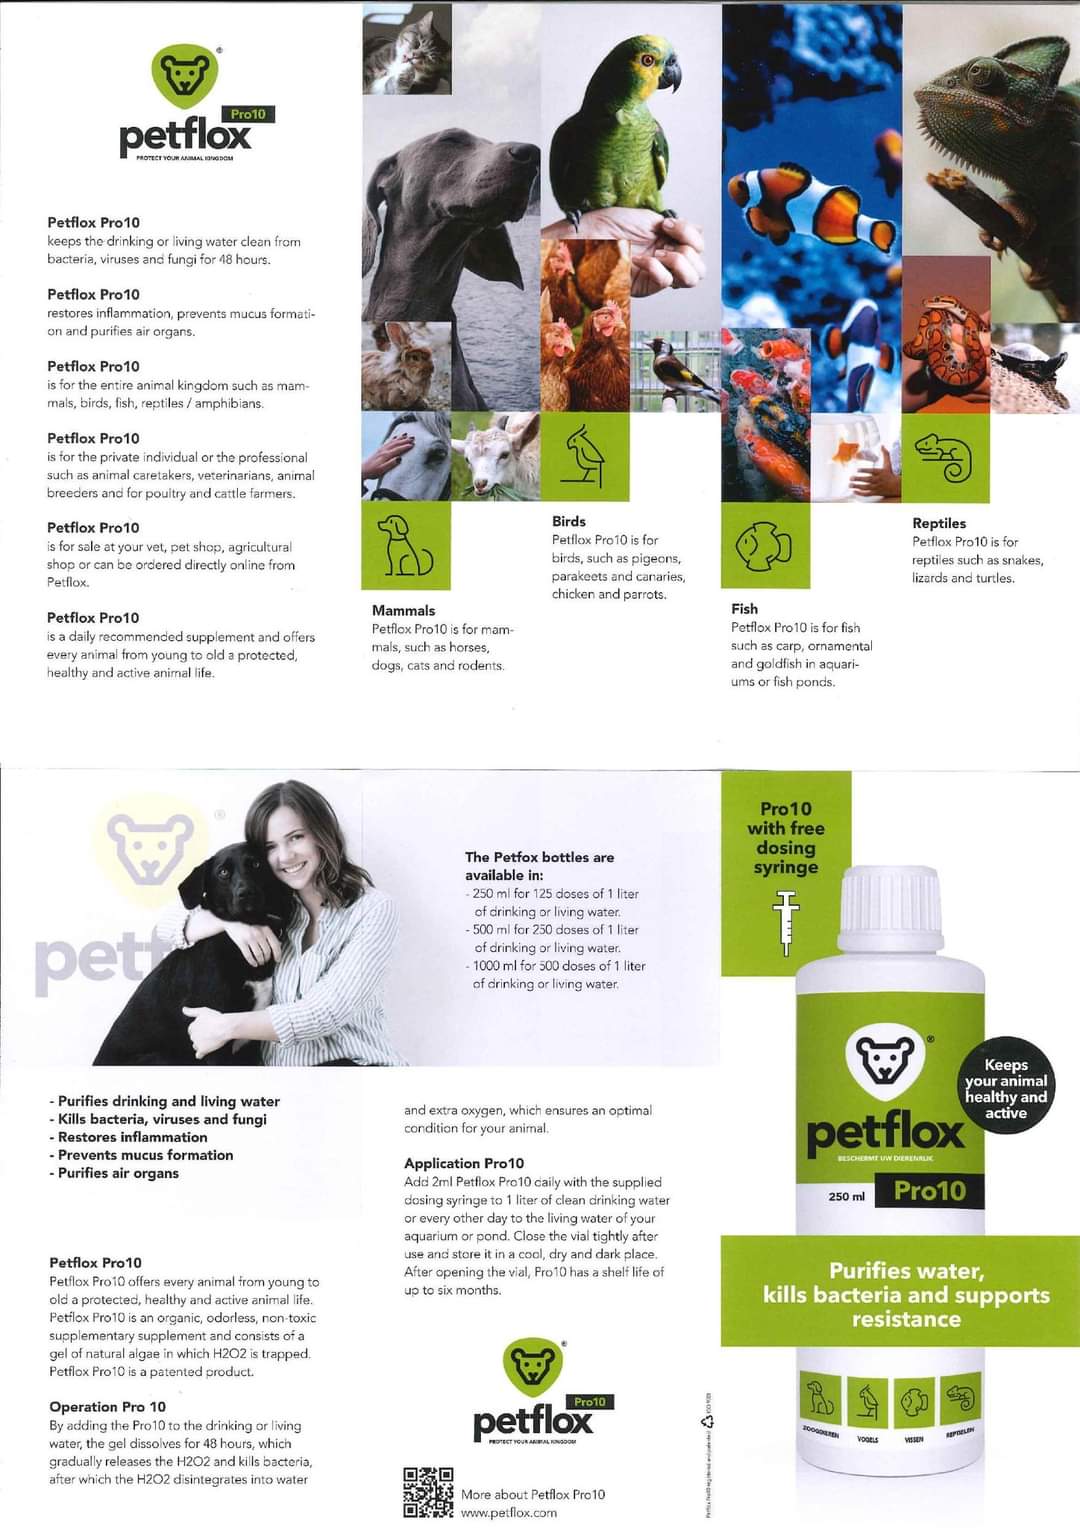 Petflox Pro10 - 250ml - Voor Alle Dieren